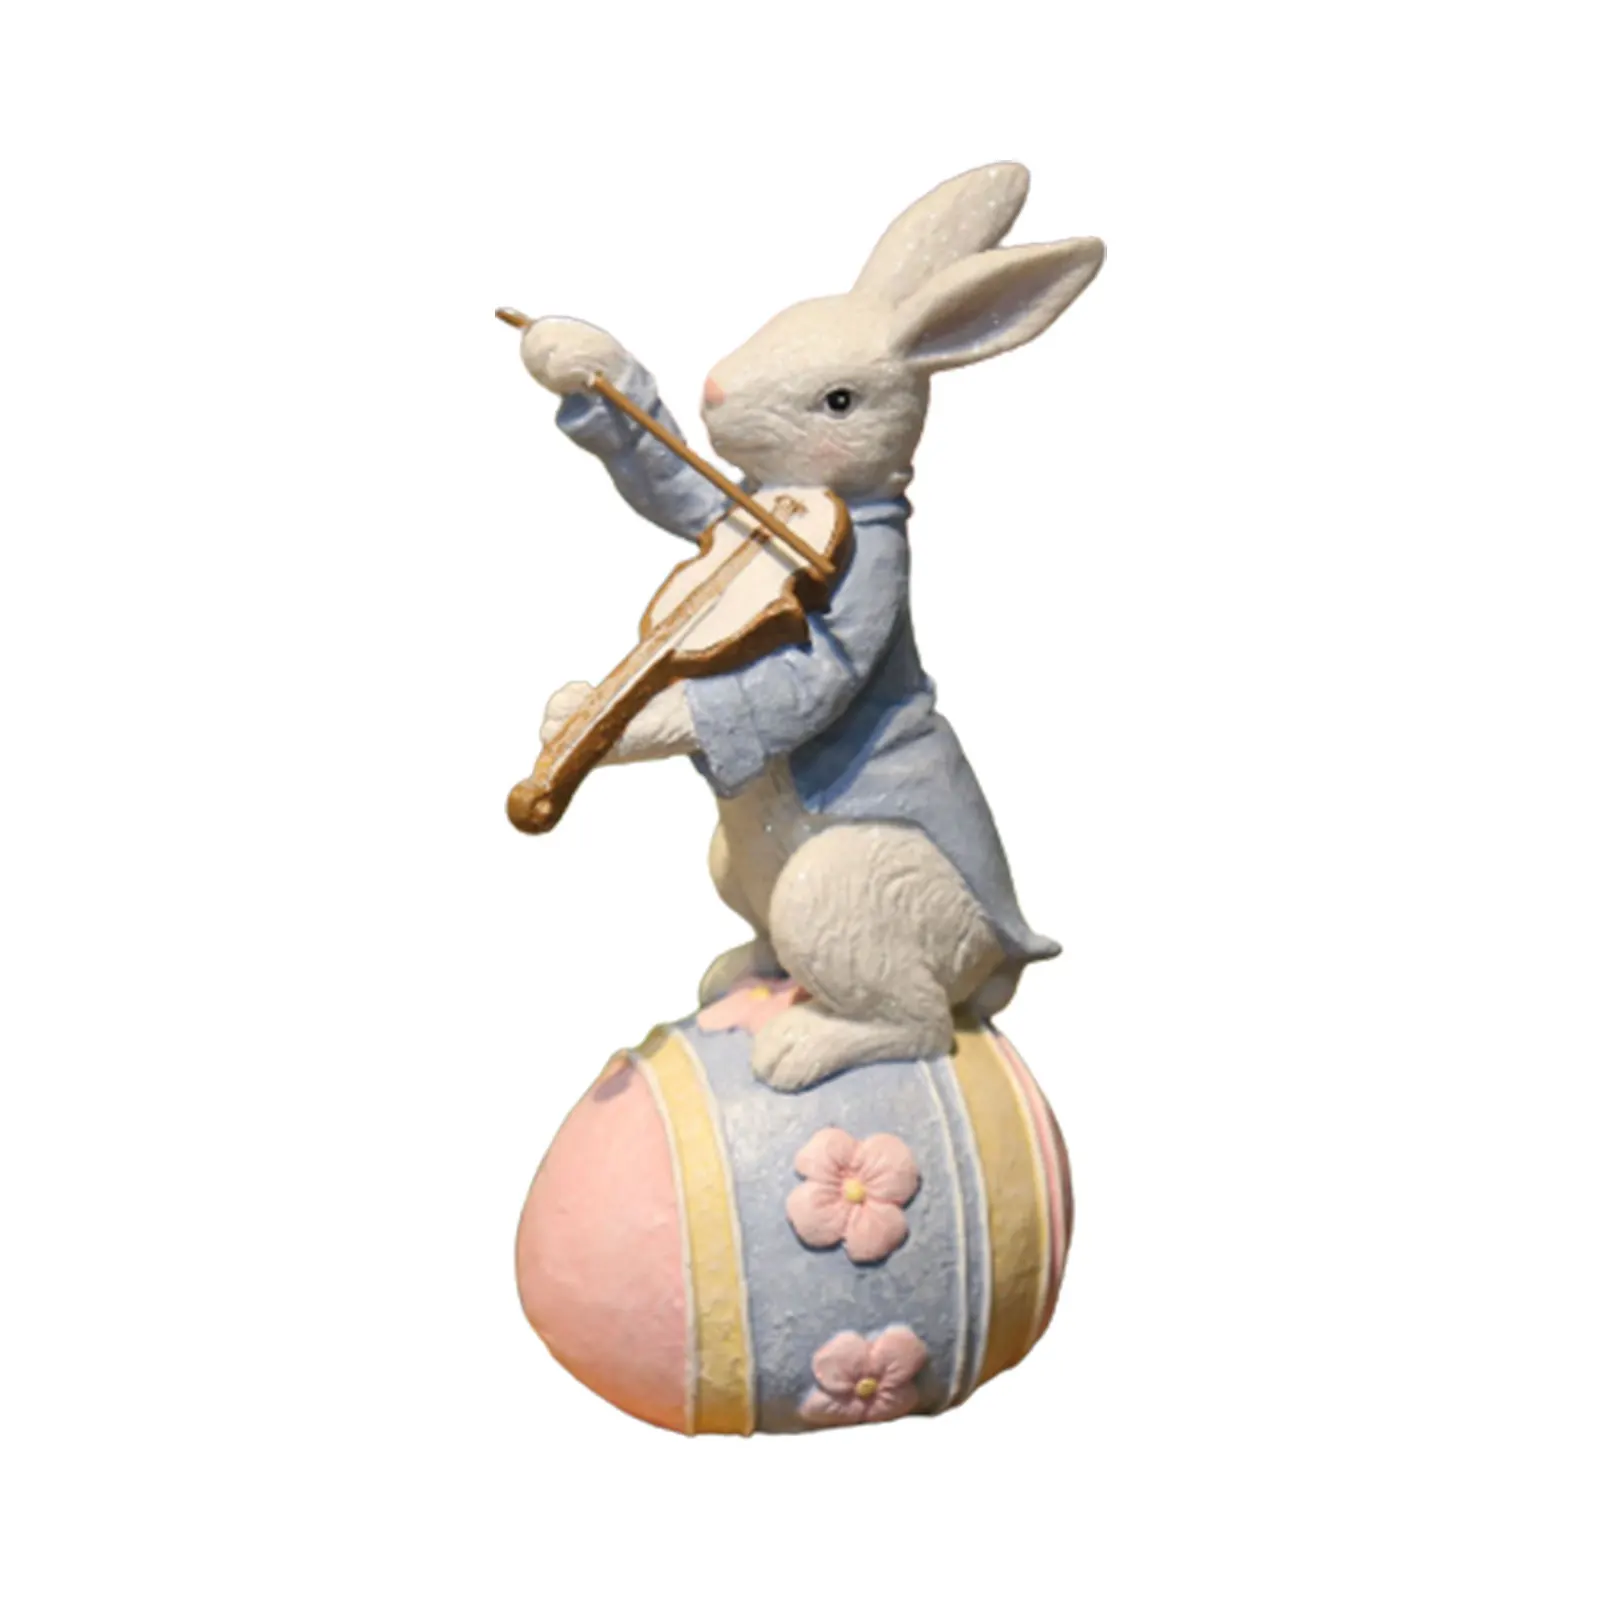 

Новинка, Лидер продаж, креативная Пасхальная Фигурка кролика, милый очаровательный декоративный легкий подарок для семьи, друга, соседа